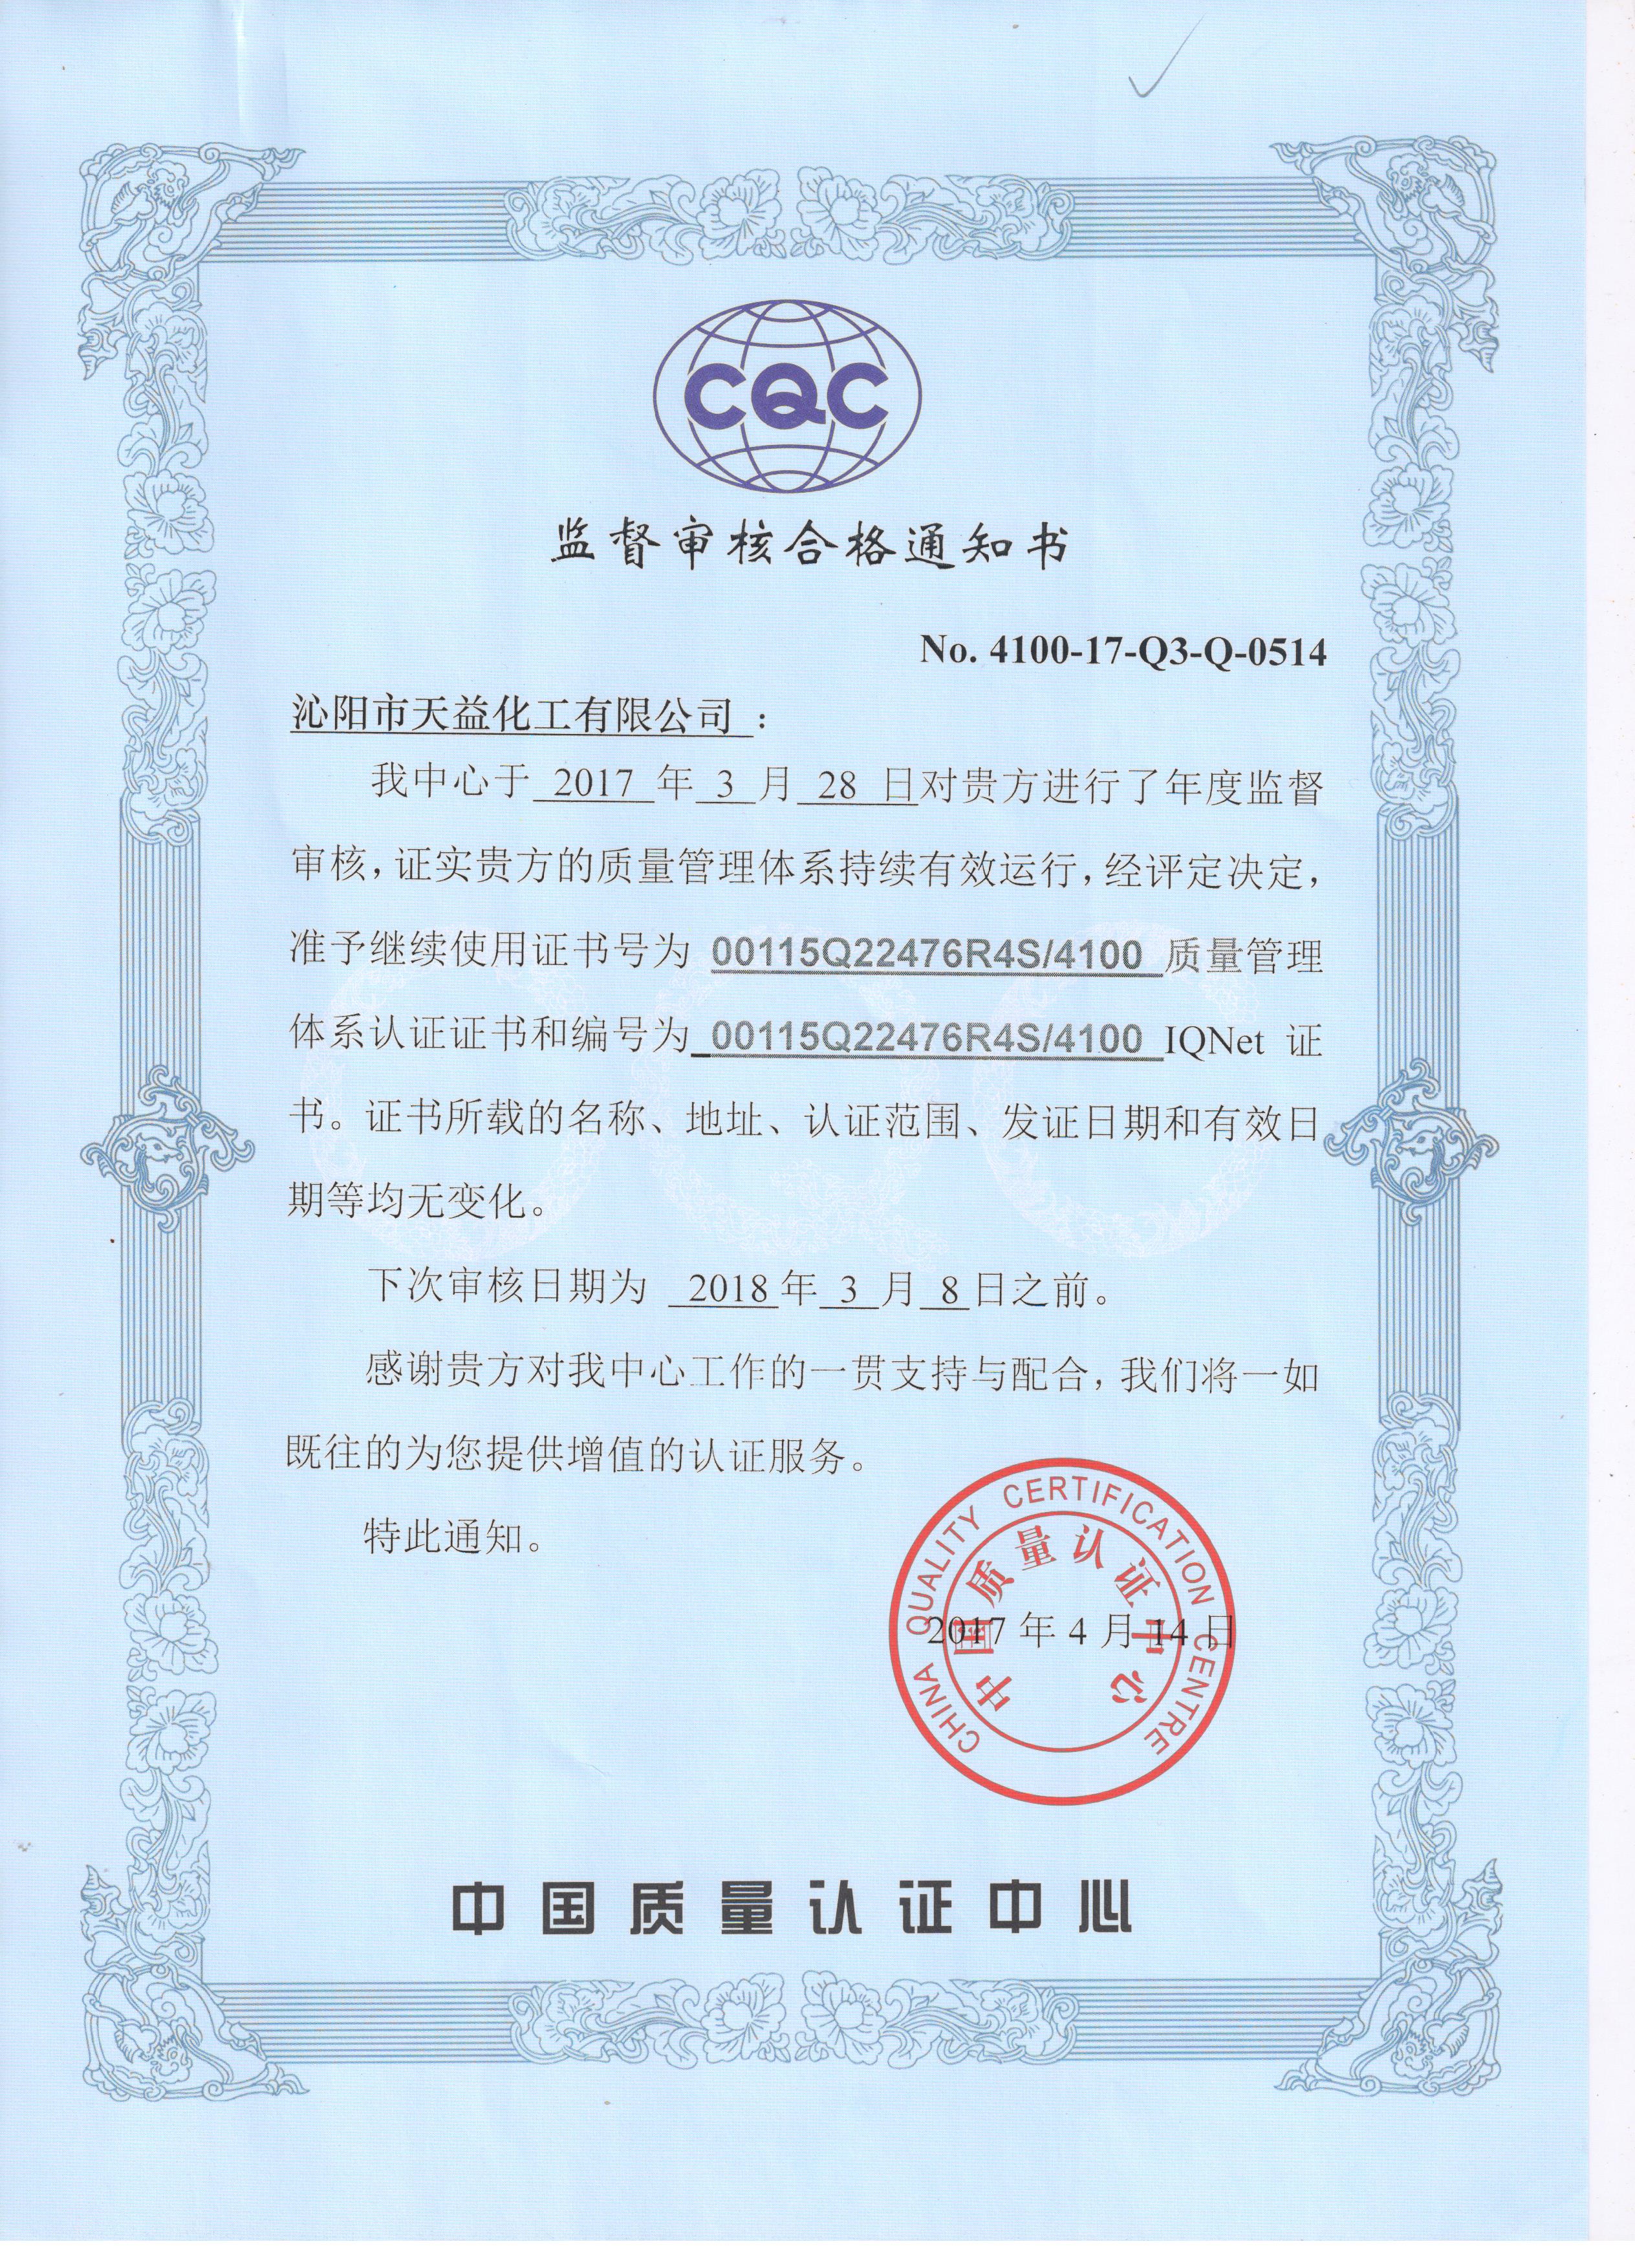 我公司顺利通过中国质量认证中心年度监督审核